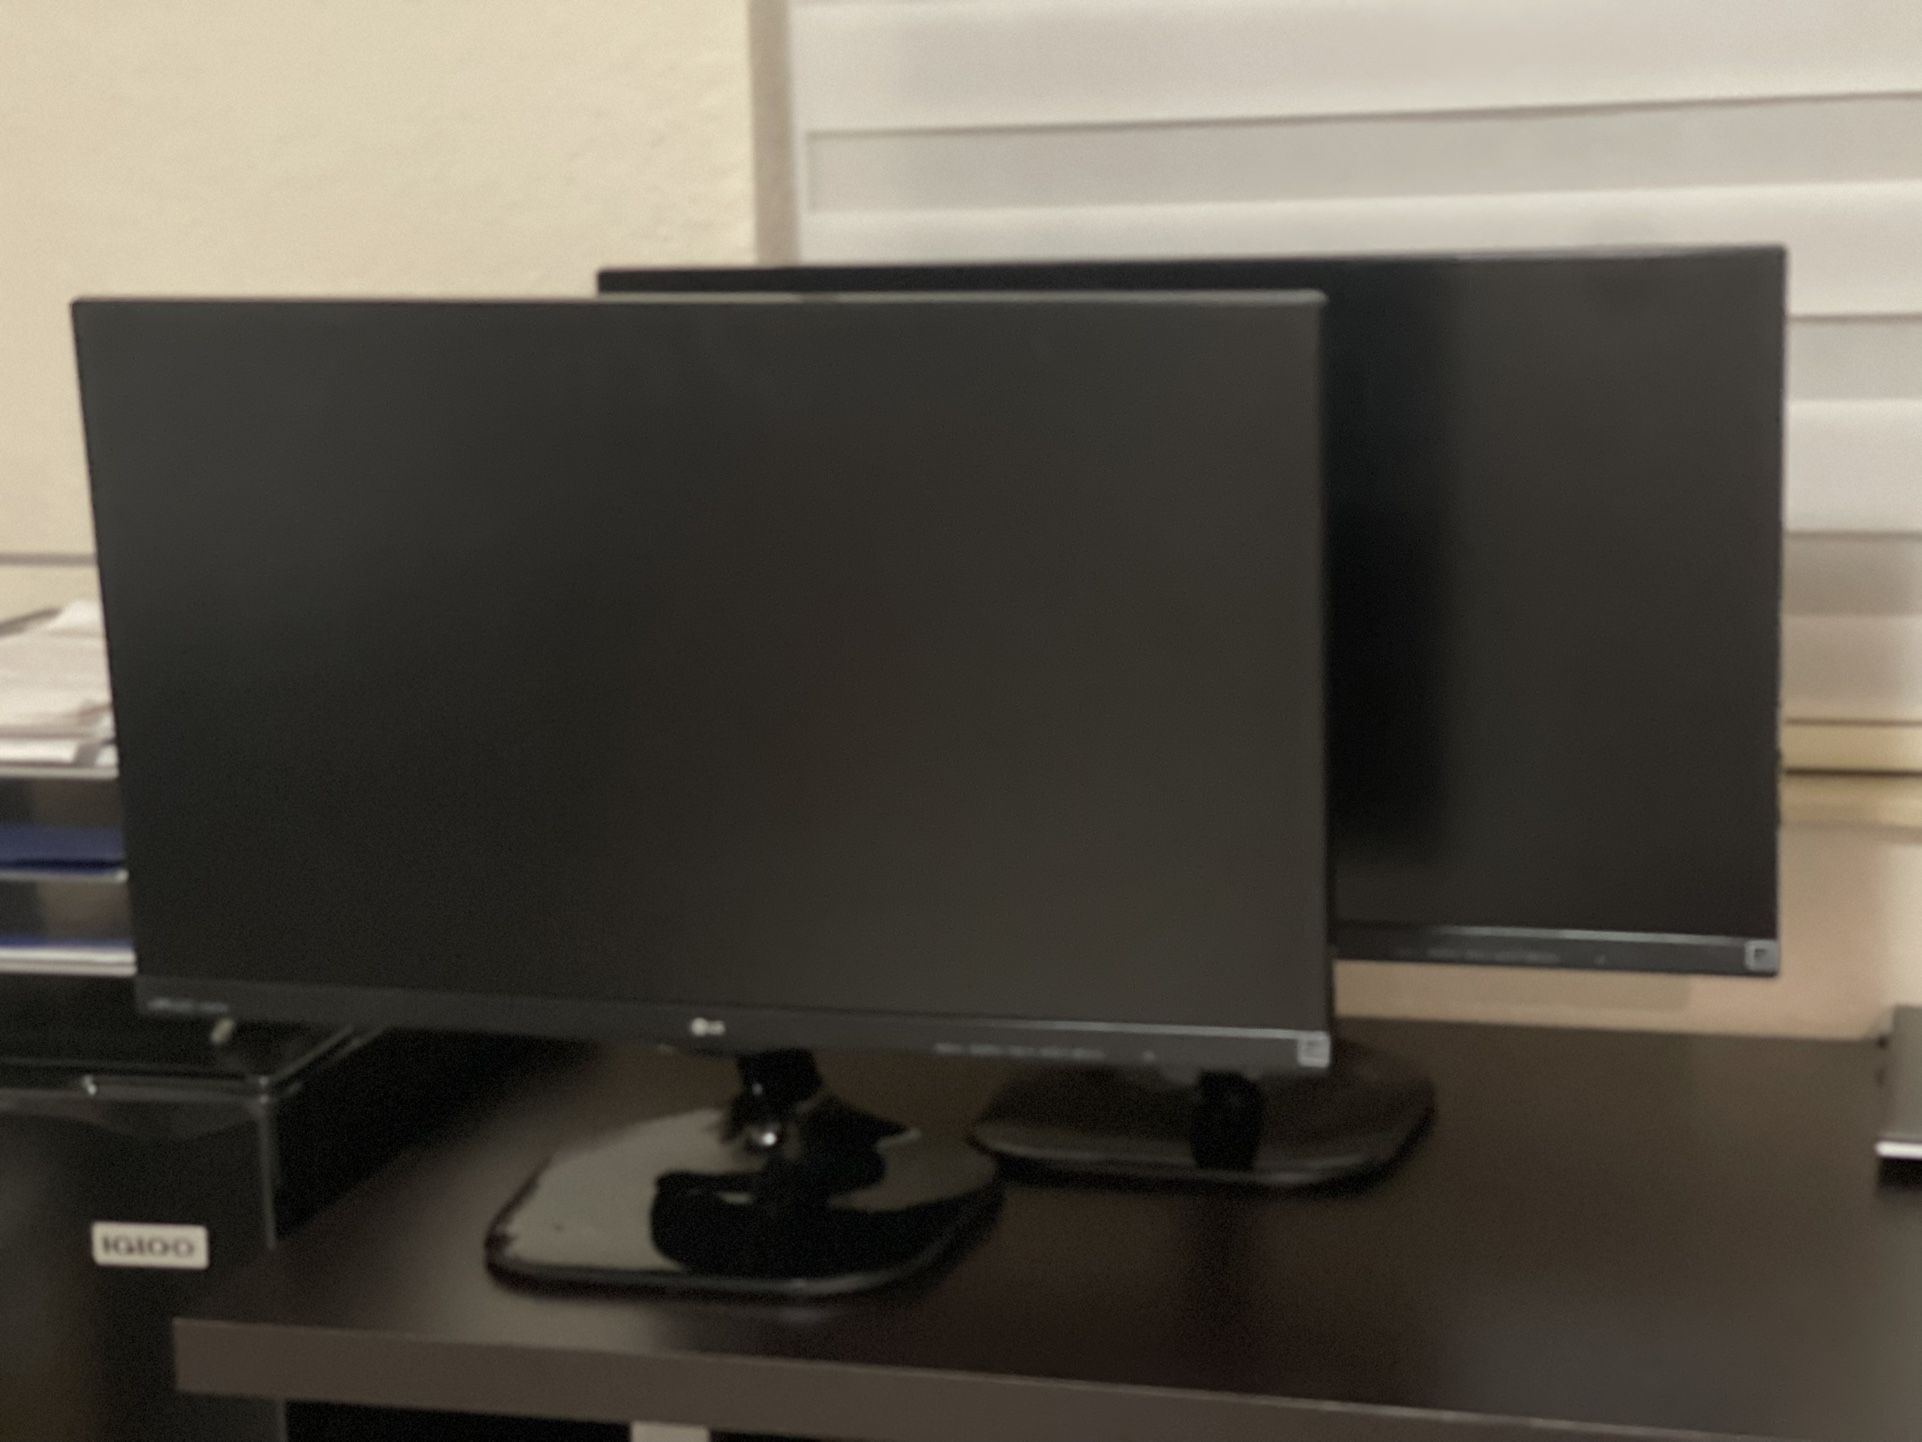 LG Computer Monitors 27” (quantity 2)